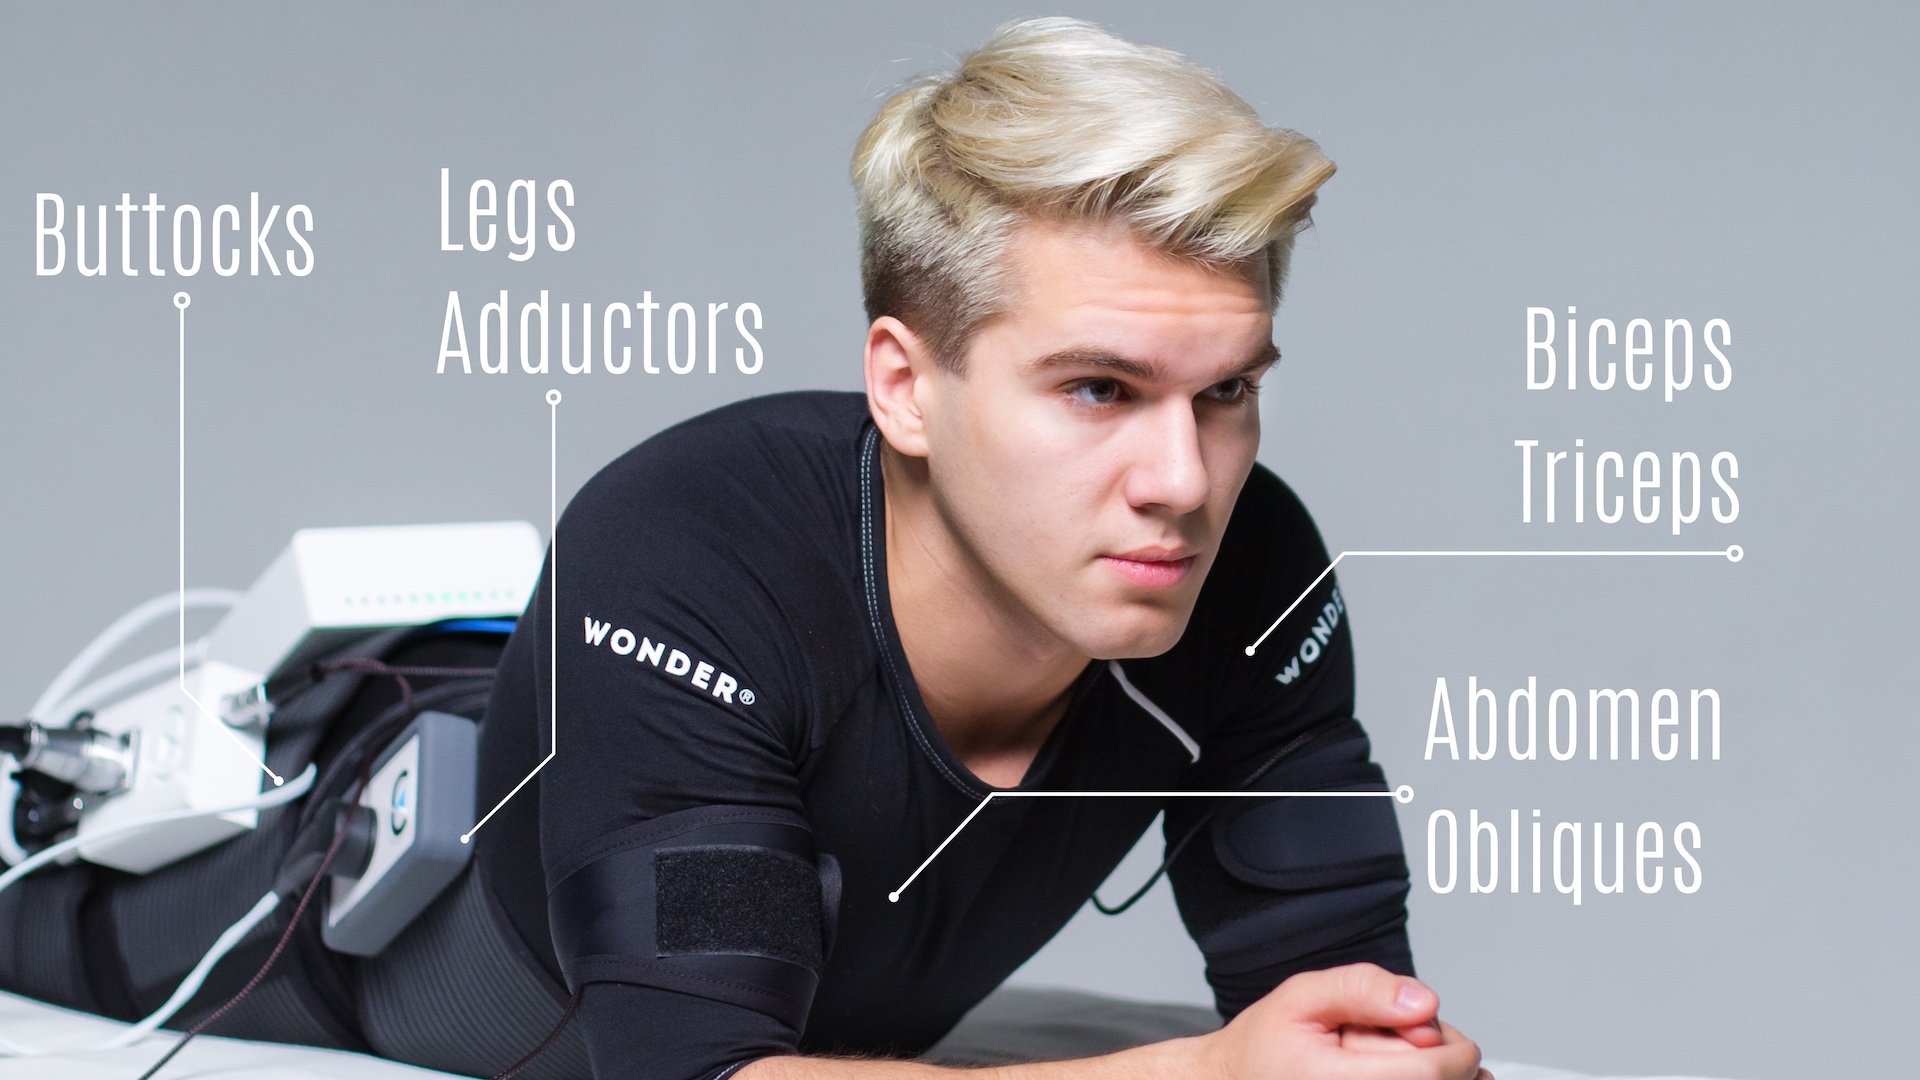 Wonder action zones: buttocks, legs, adductors, biceps, triceps, abdomen, obliques